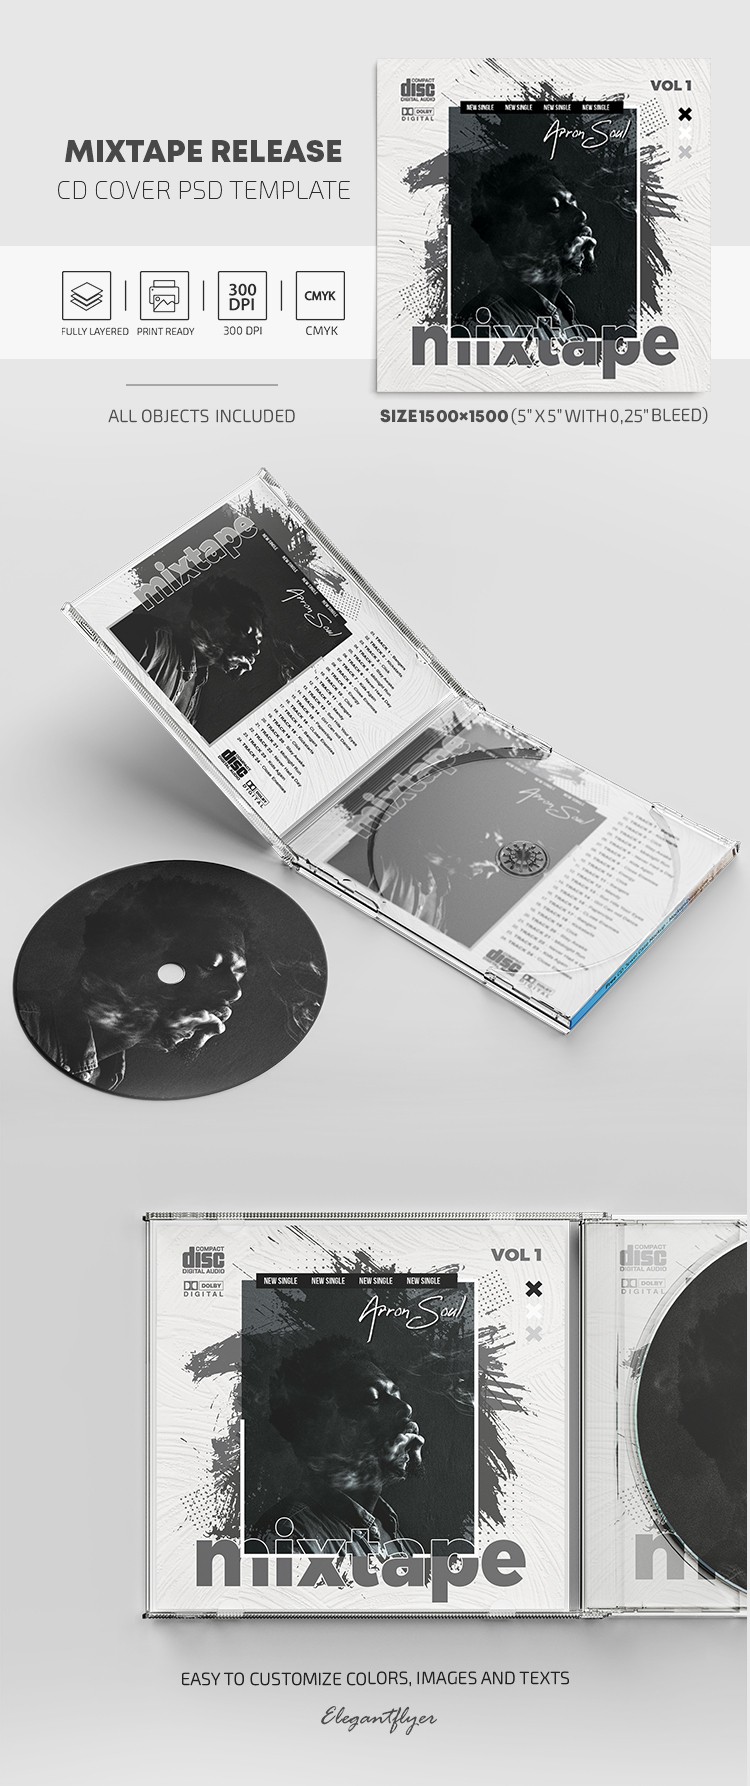 Okładka wydawnictwa płyty CD Mixtape Release by ElegantFlyer